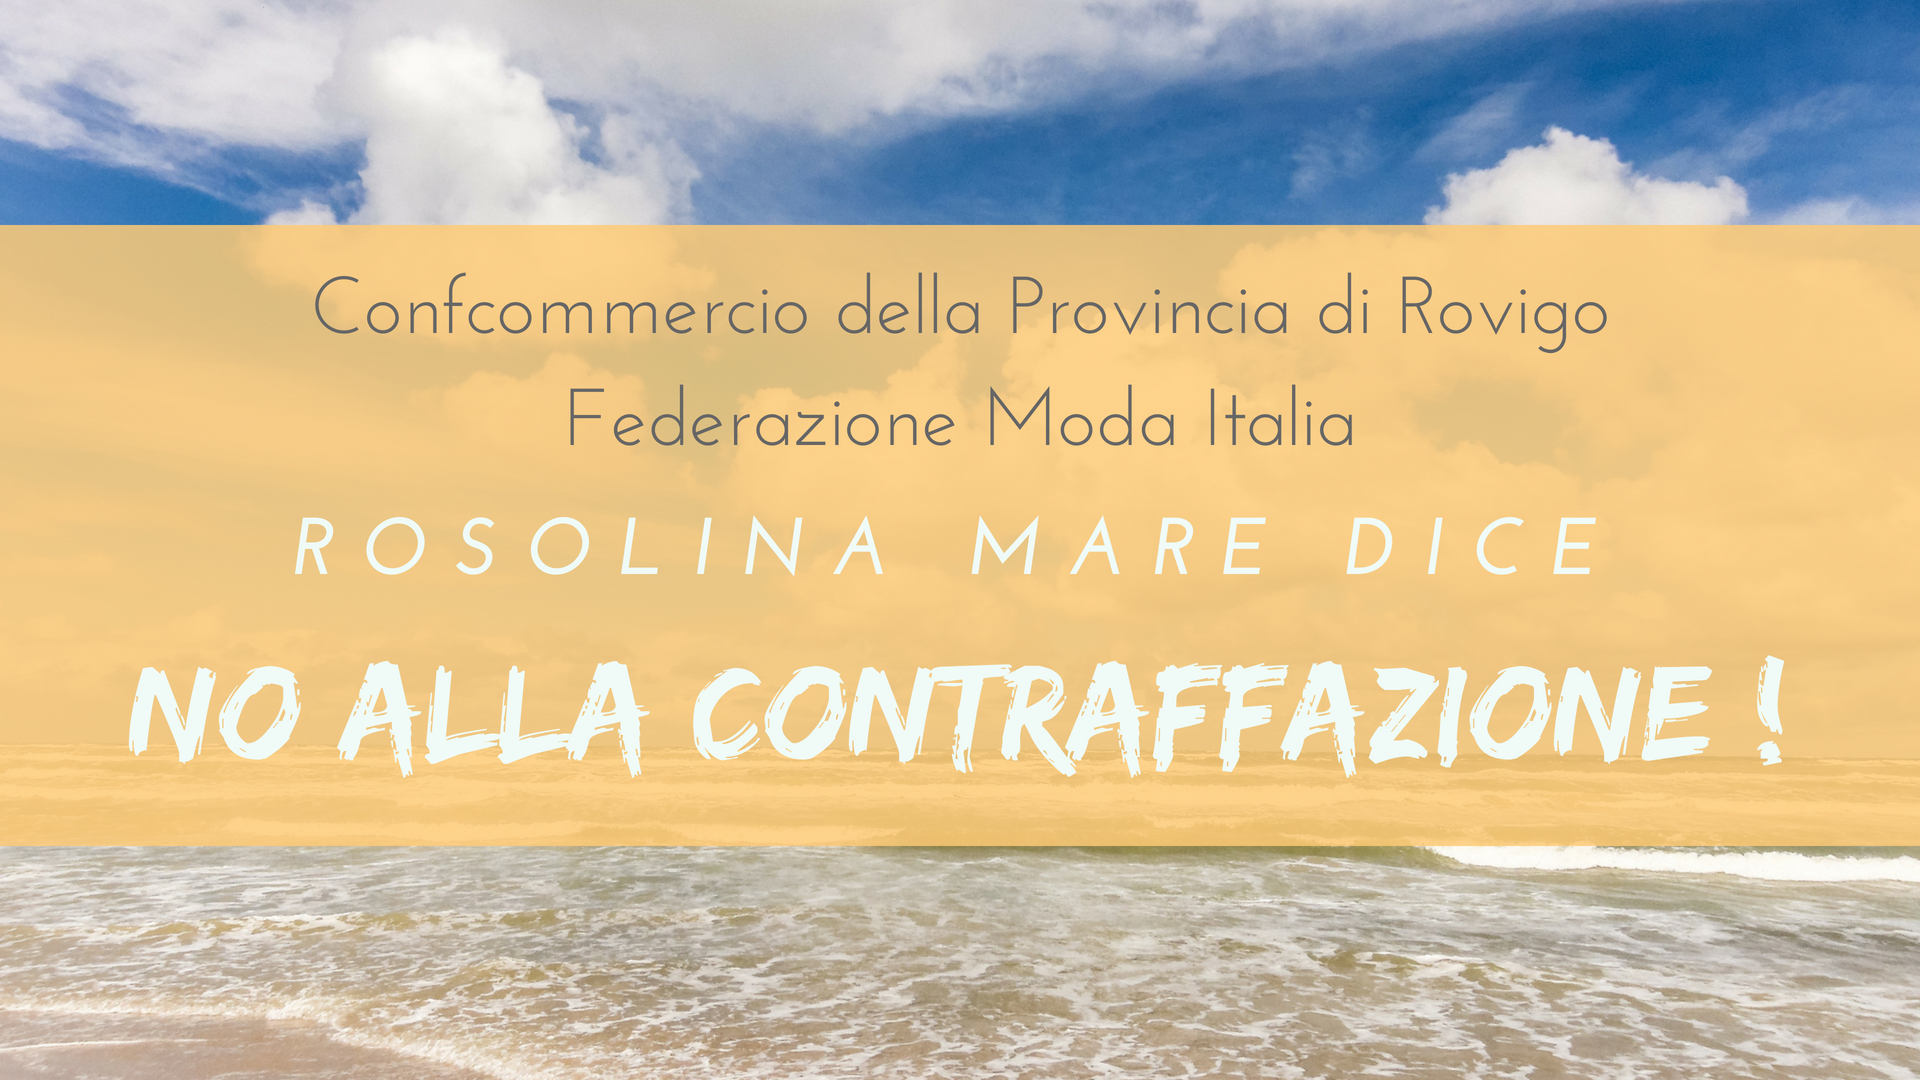 No contraffazione Rosolina Mare